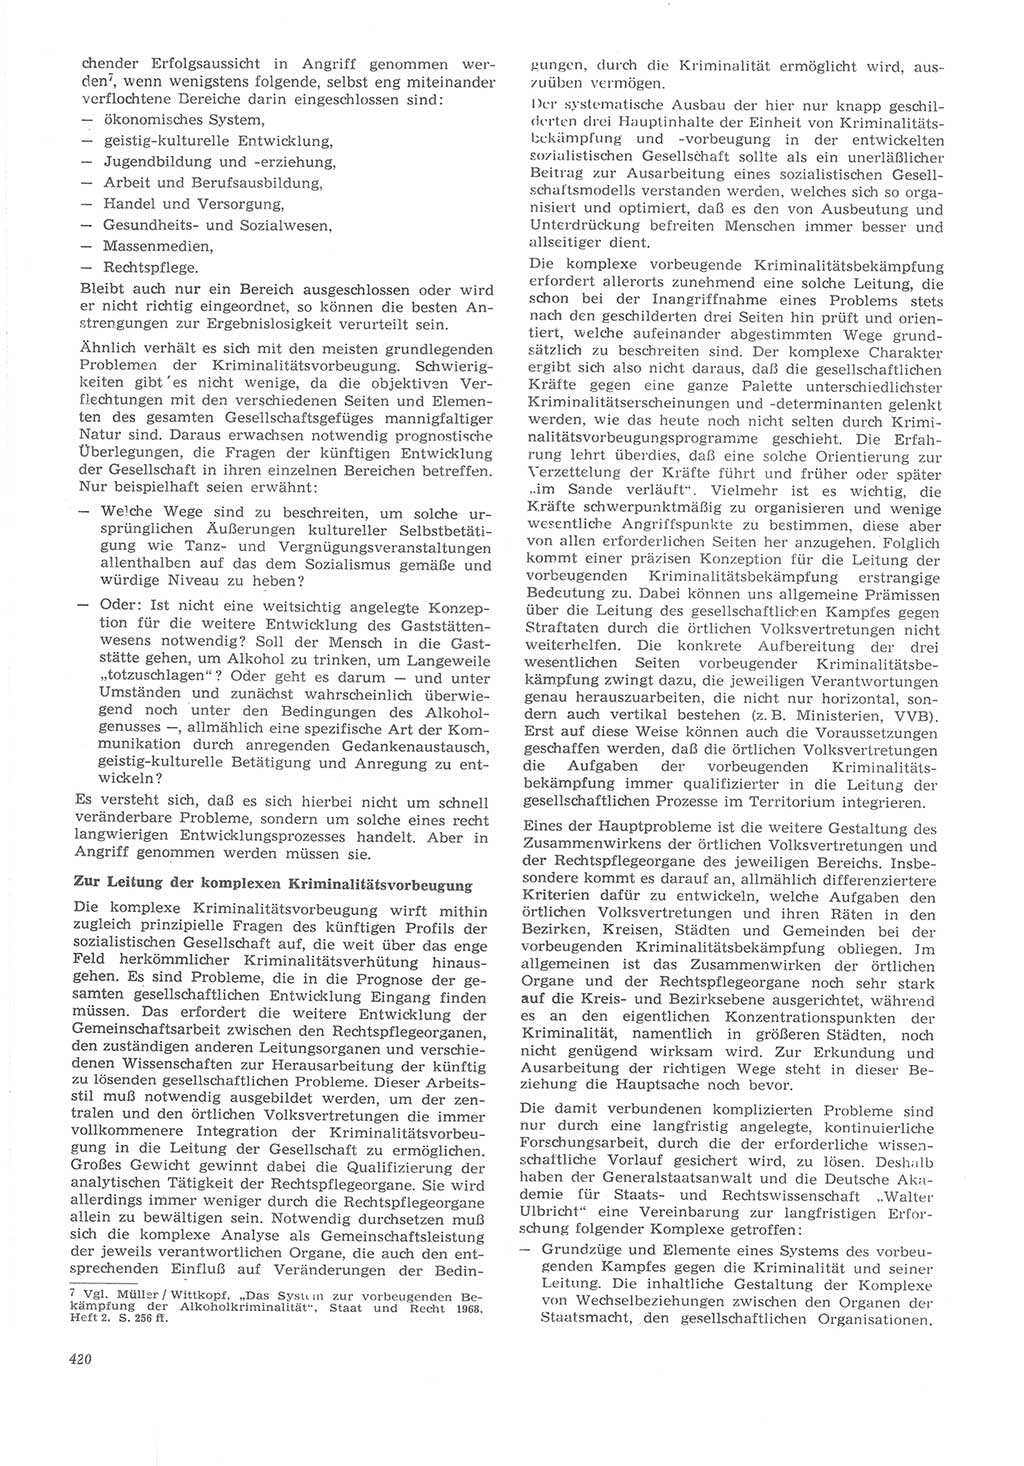 Neue Justiz (NJ), Zeitschrift für Recht und Rechtswissenschaft [Deutsche Demokratische Republik (DDR)], 22. Jahrgang 1968, Seite 420 (NJ DDR 1968, S. 420)